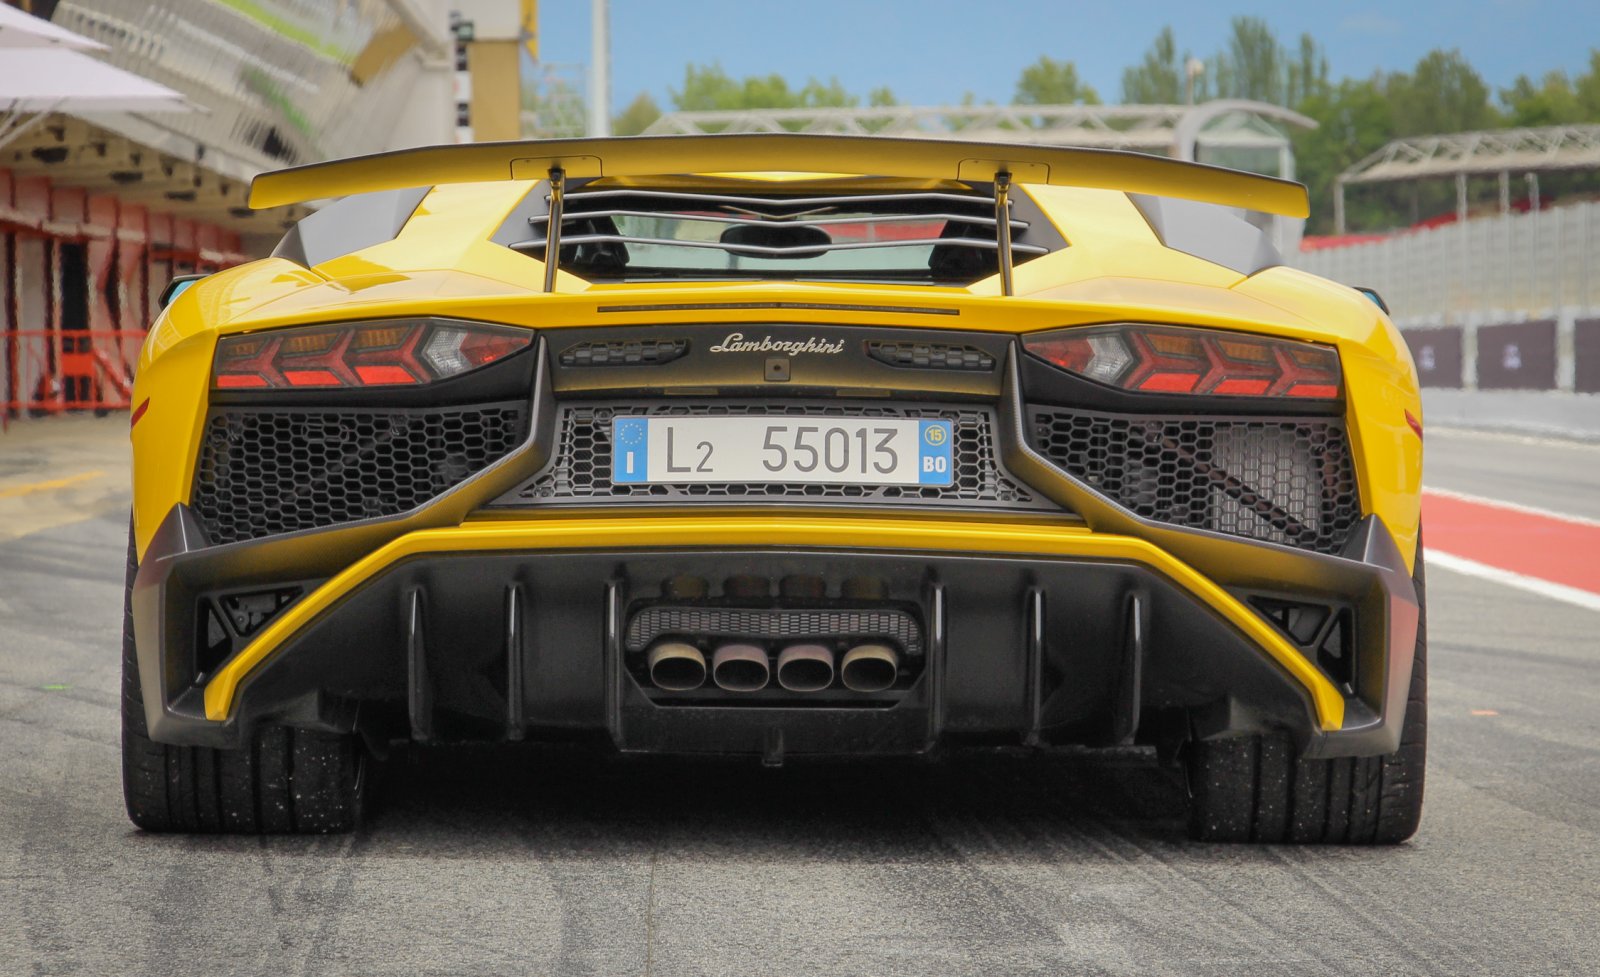 2016-Lamborghini-Aventador-Yellow-exterior-rear-close-up.jpg